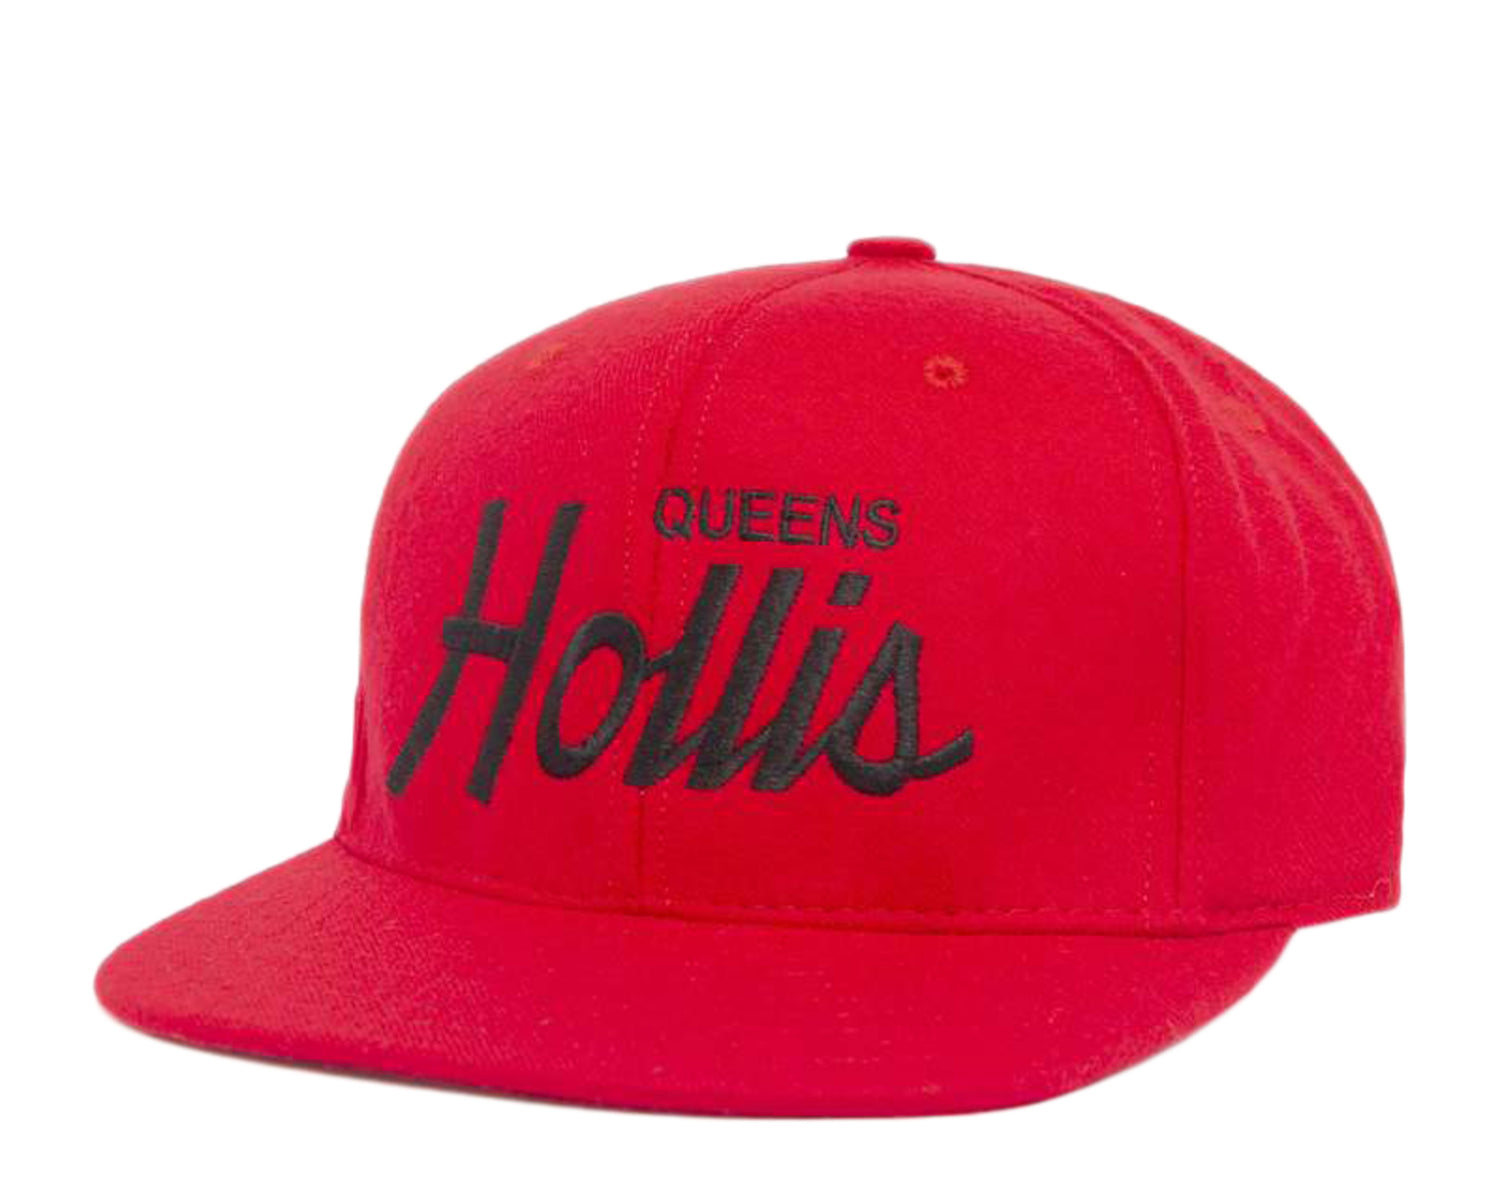 Hood Hat USA Hollis Queens NY Wool Snapback